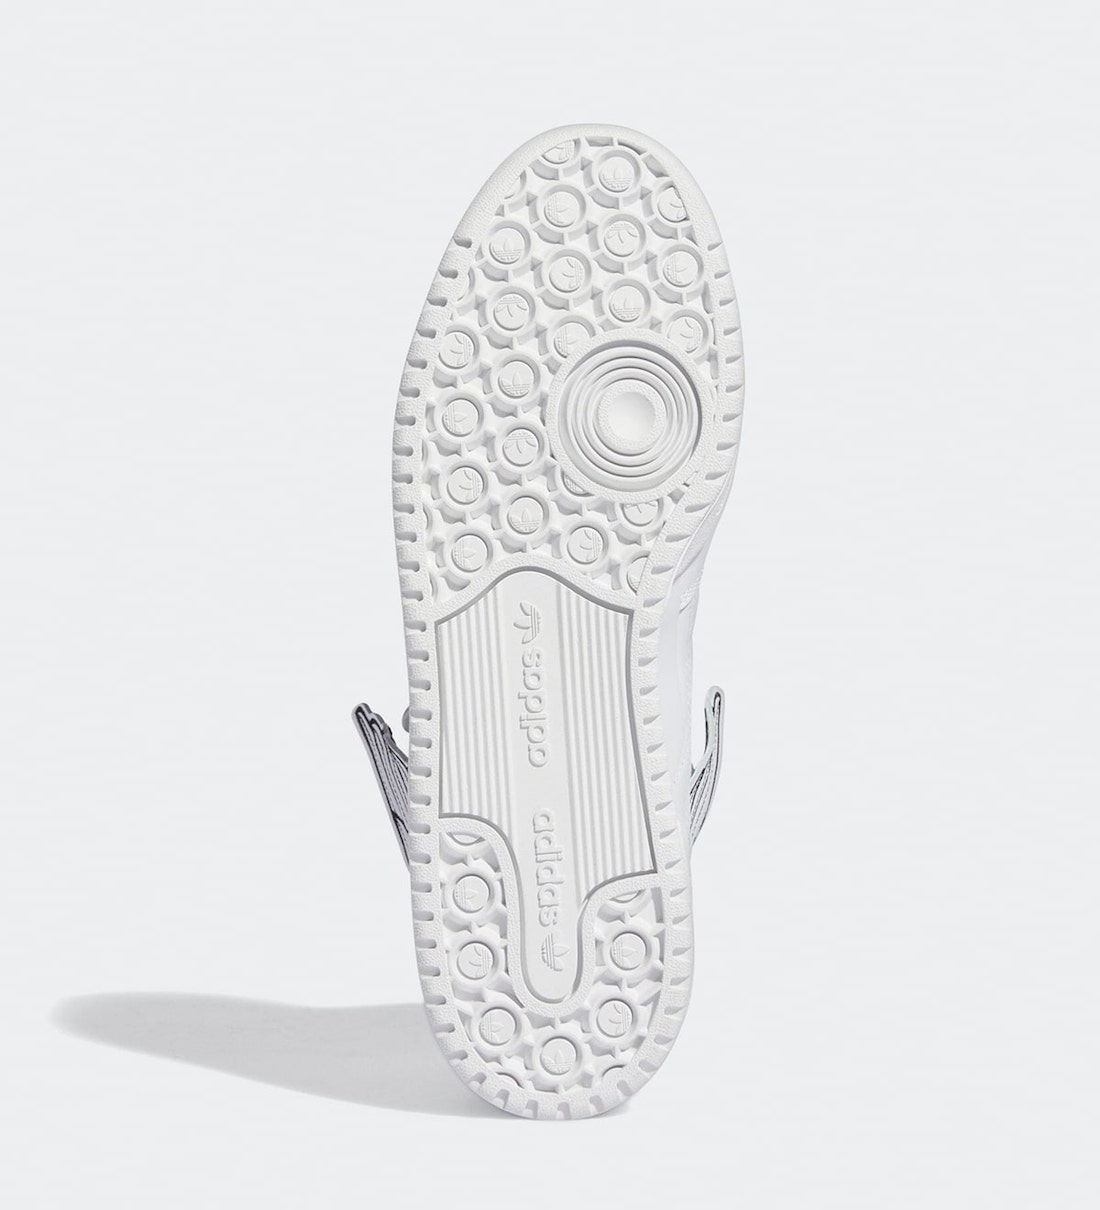 Jeremy Scott adidas Forum Hi Wings 4.0 White Black GX9445 Release Date